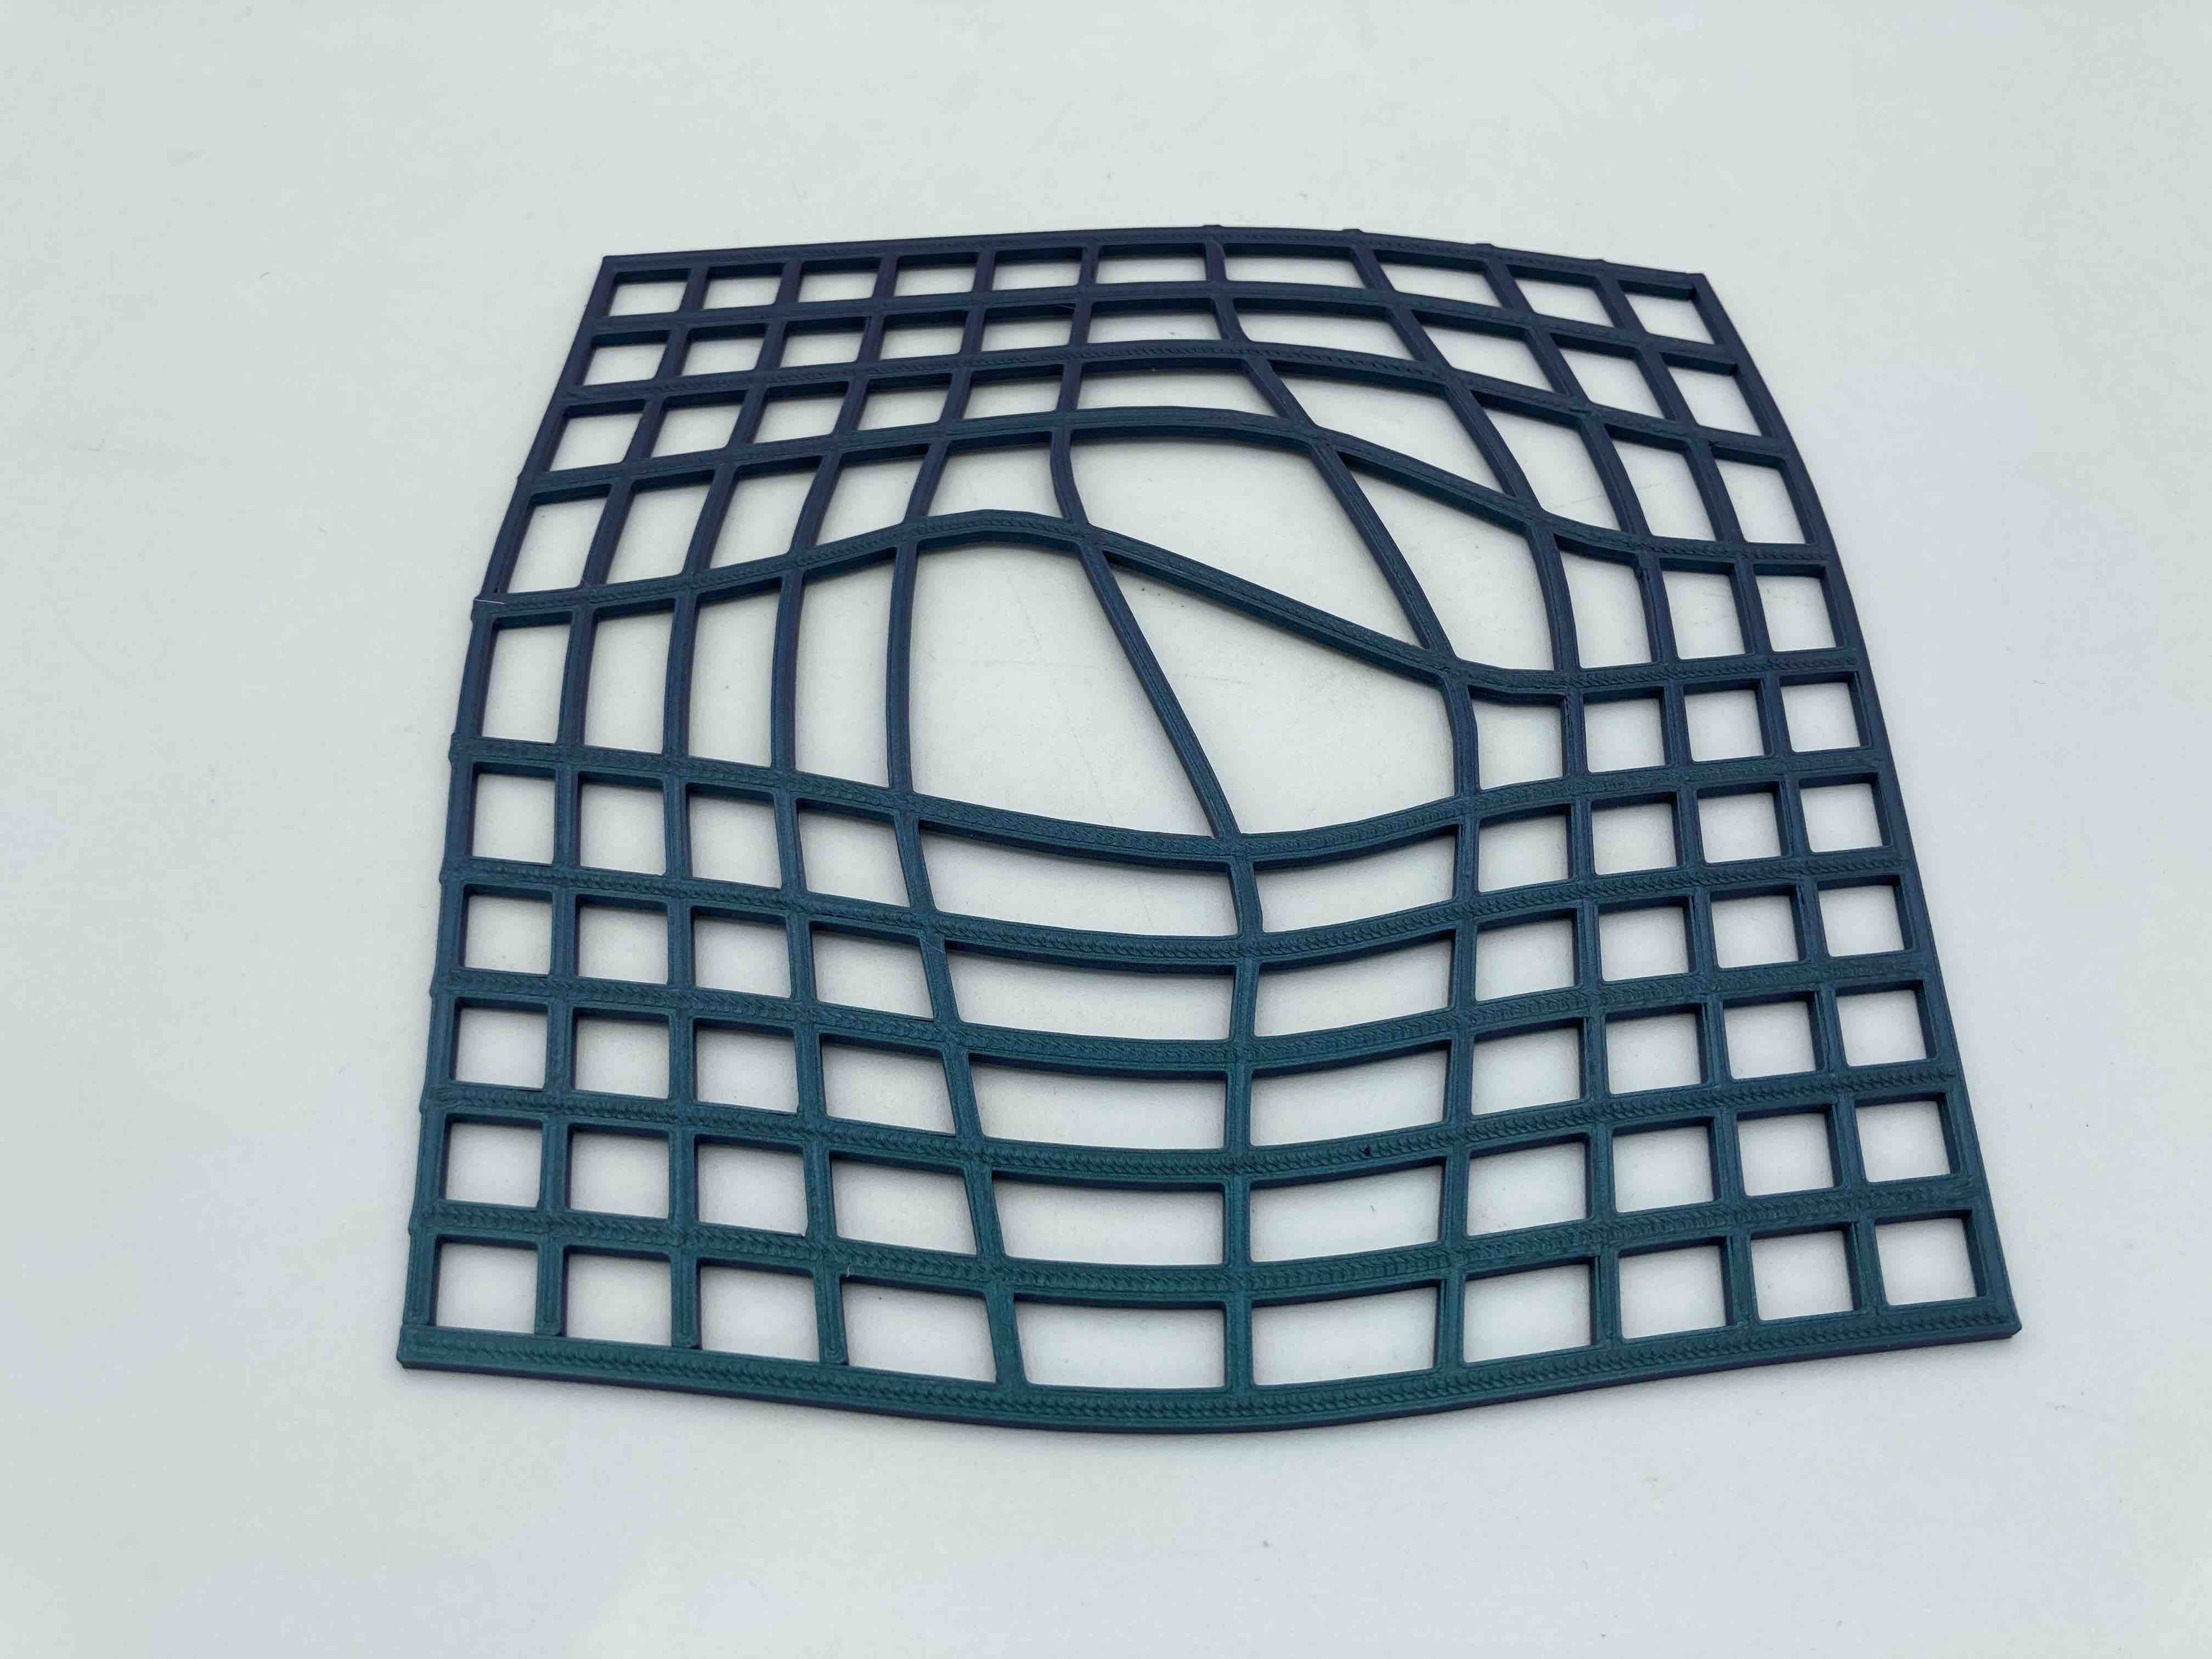 3D Printed Grid